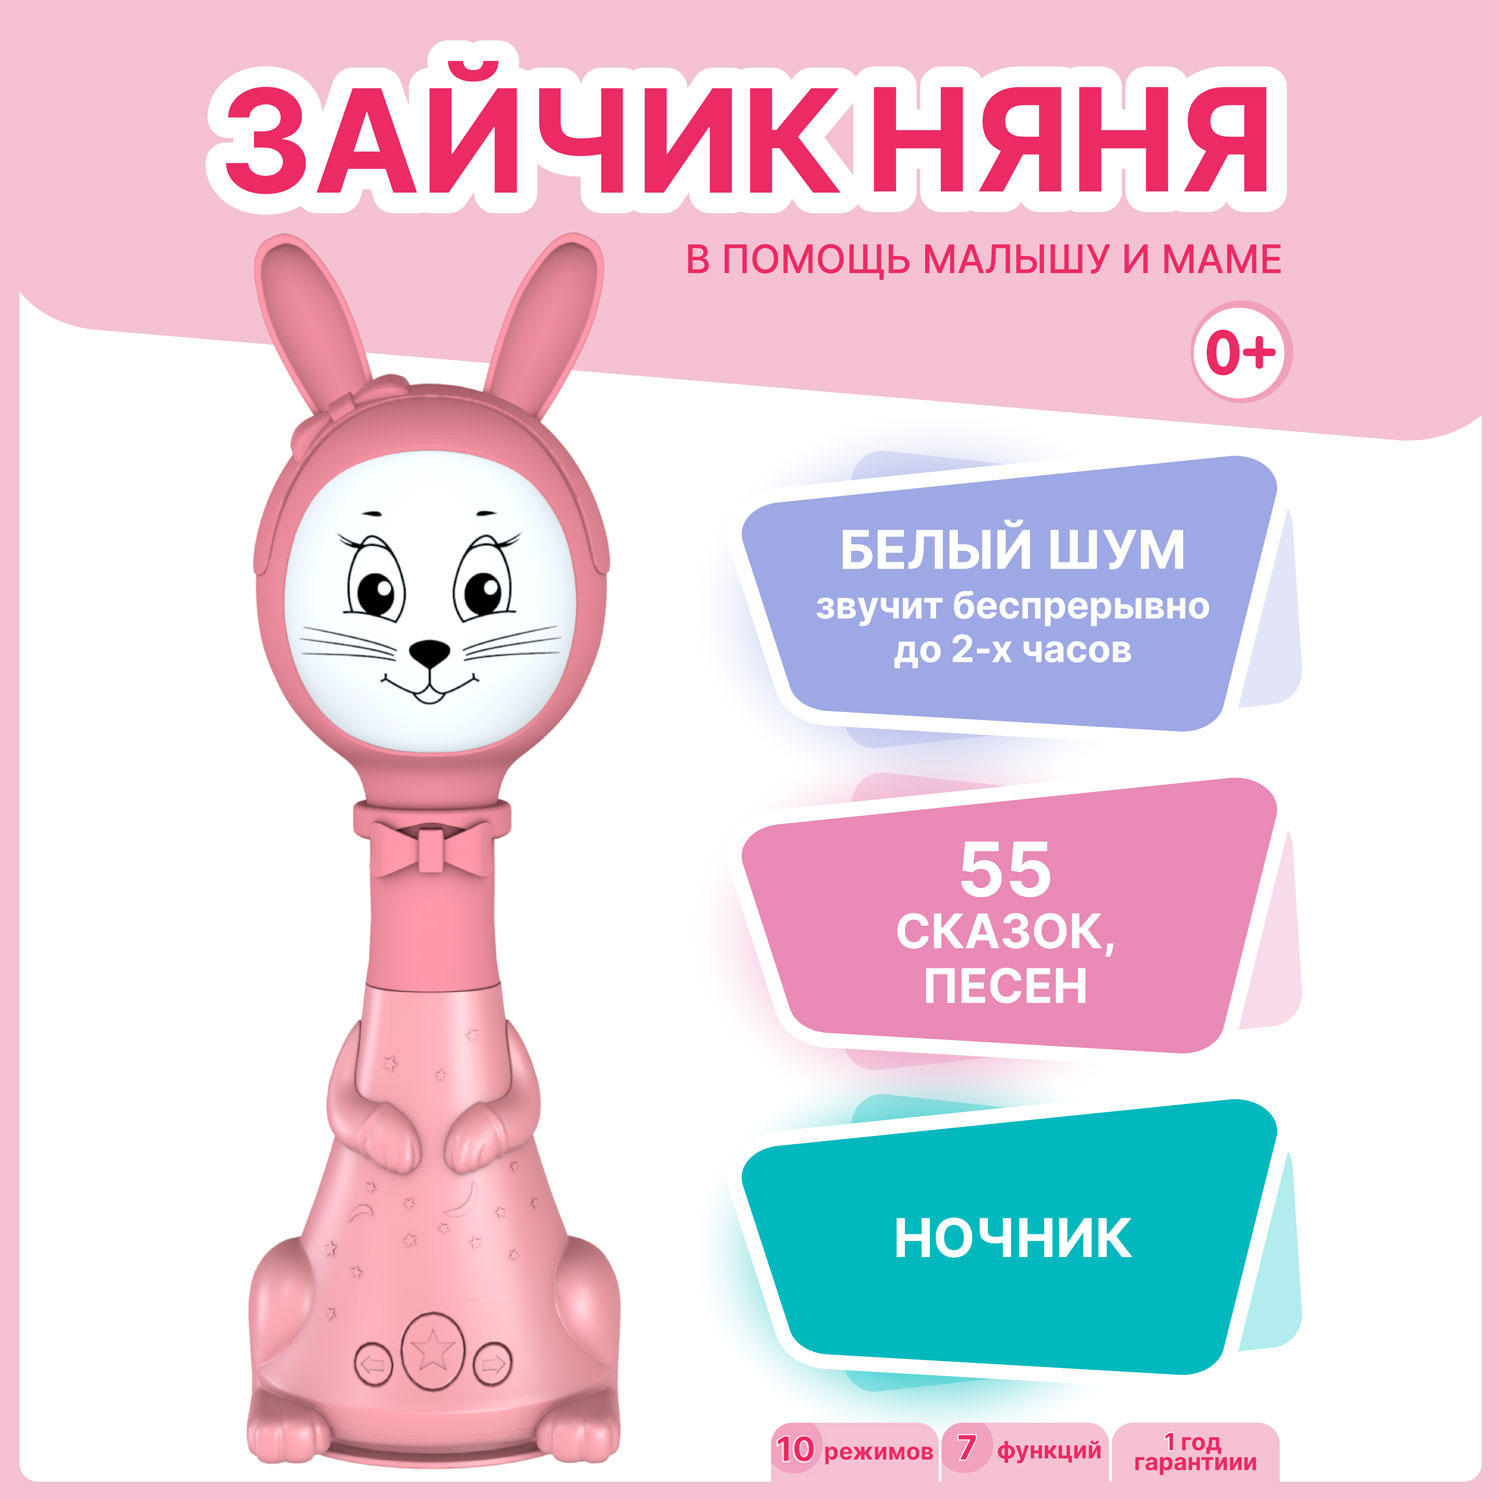 Интерактивная развивающая игрушка для малышей BertToys Зайчик Няня FD125/Розовый веселые картинки зайчик 1 3 года раскводмногораз папка упаковка